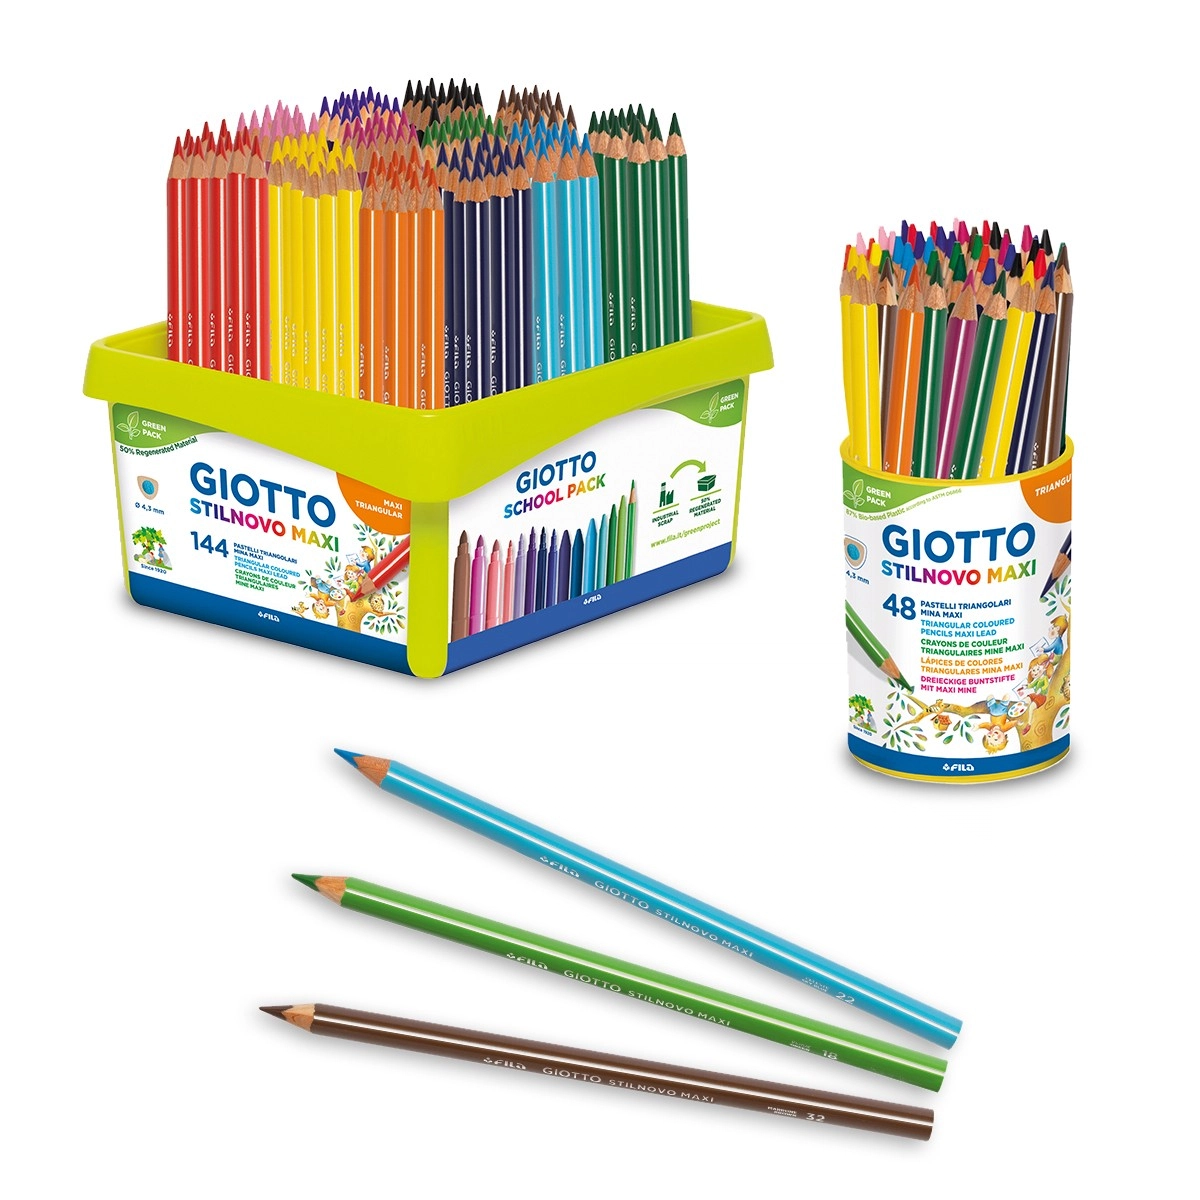 Giotto Stilnovo Skin Tones Colouring Pencils - School Kids Art